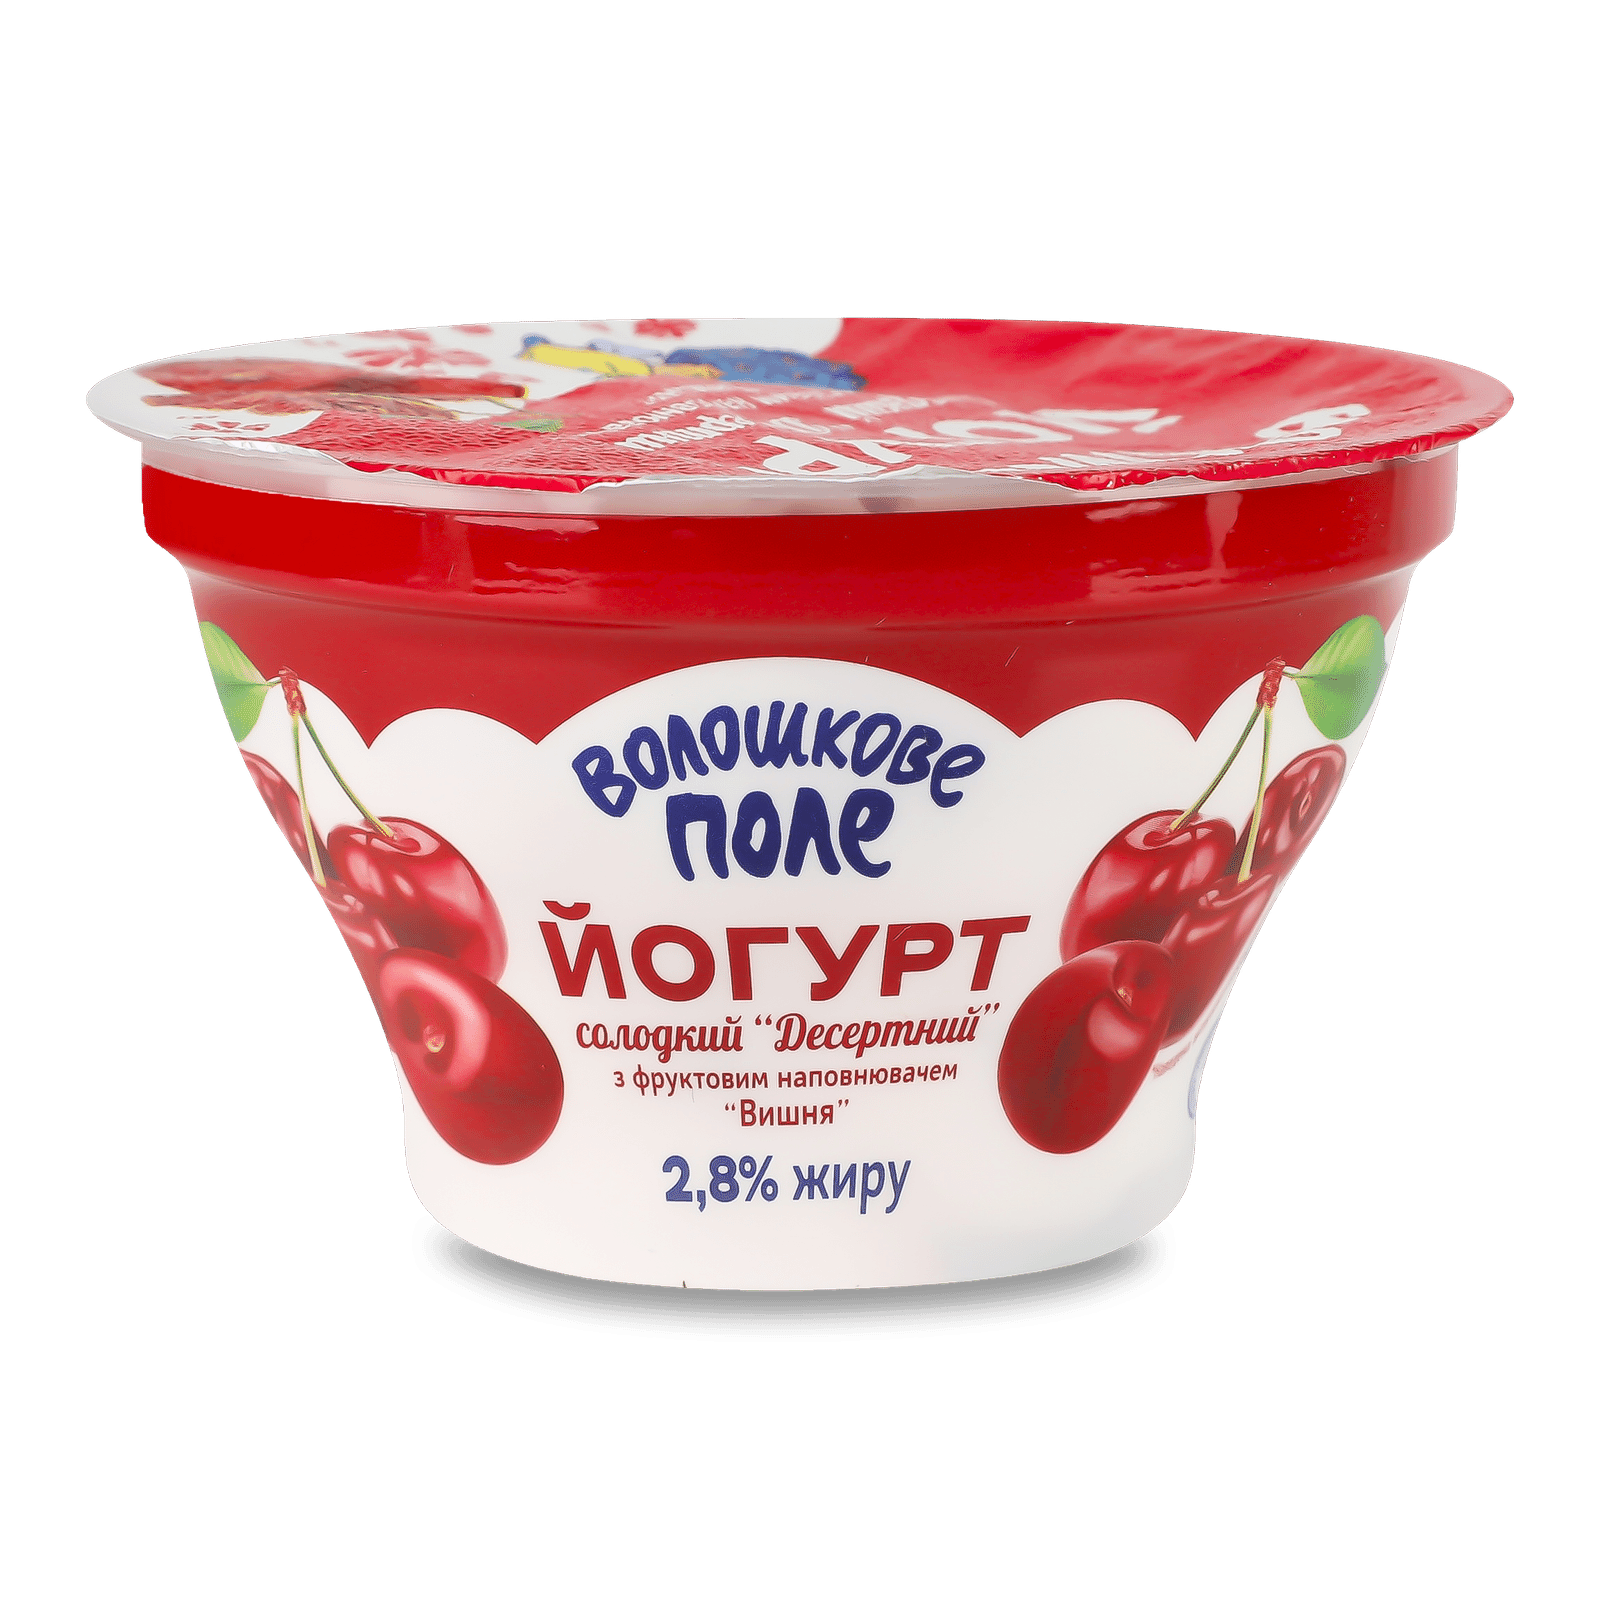 Йогурт «Волошкове поле» вишня 2,8% стакан - 1